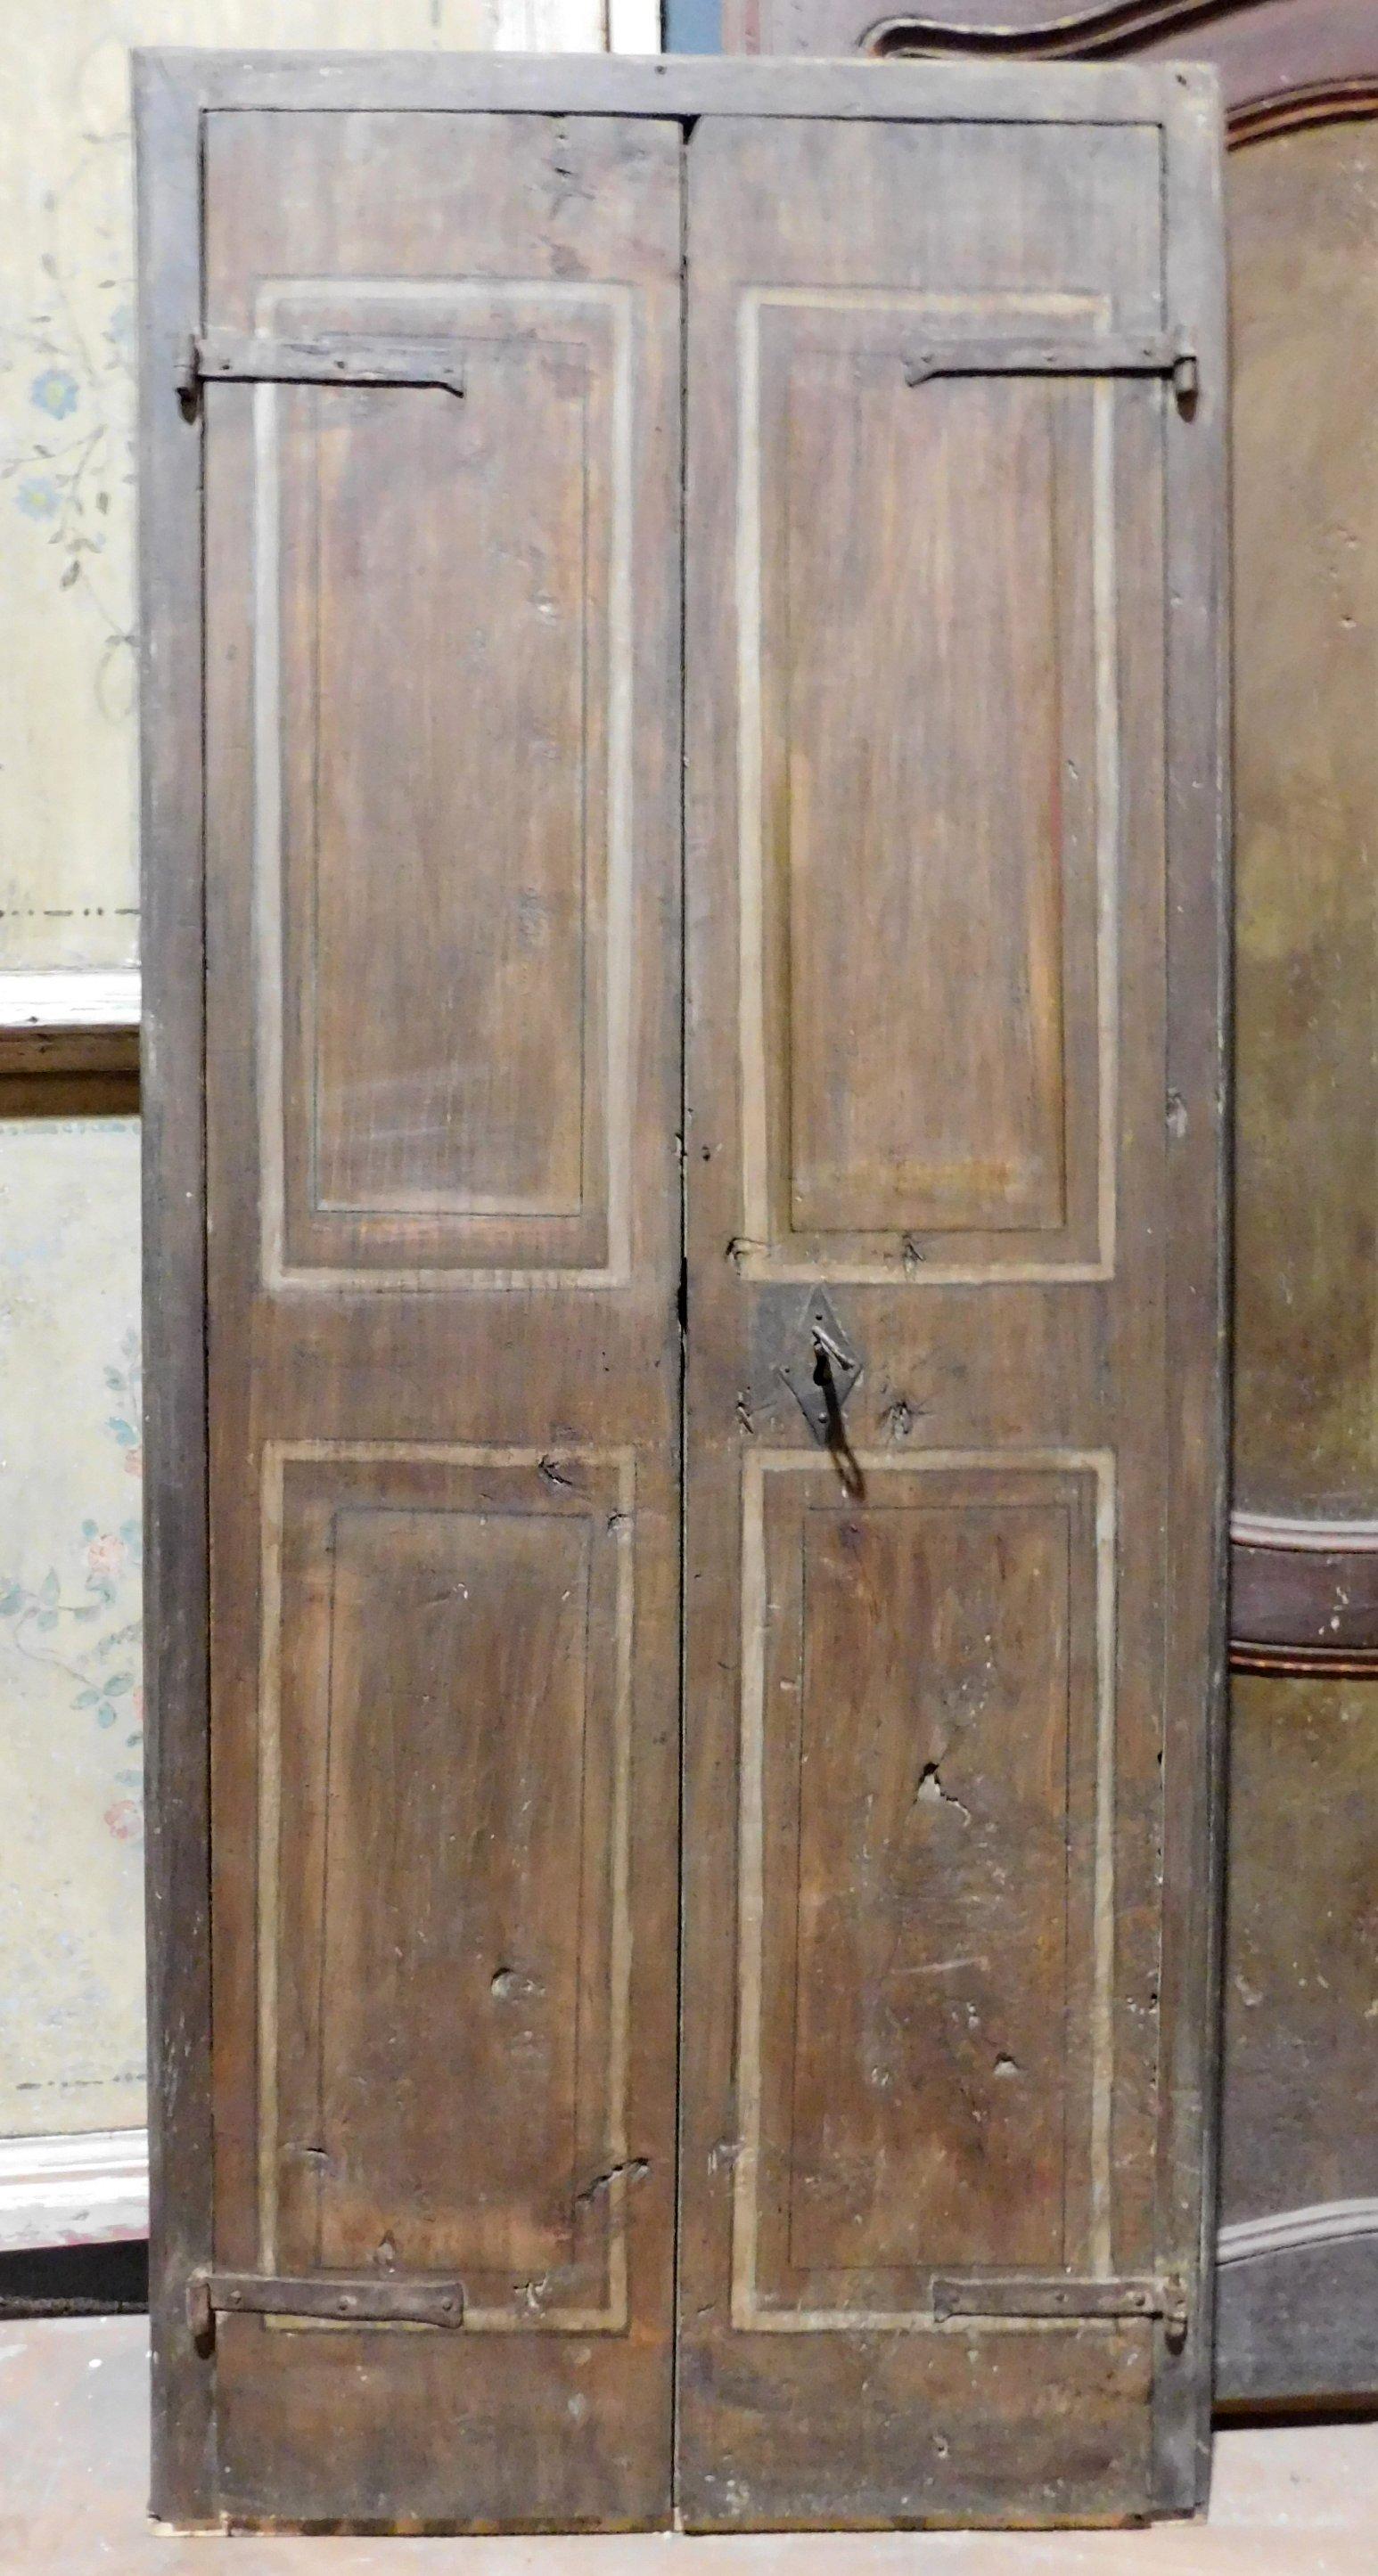 Porte ancienne pour armoire murale en bois laqué, couleur brun patiné de la haute époque, avec panneaux peints, construite au XVIIIe siècle en Italie.
Complète, avec cadre, fers d'origine et ouverture à tirette, elle peut être utilisée aussi bien